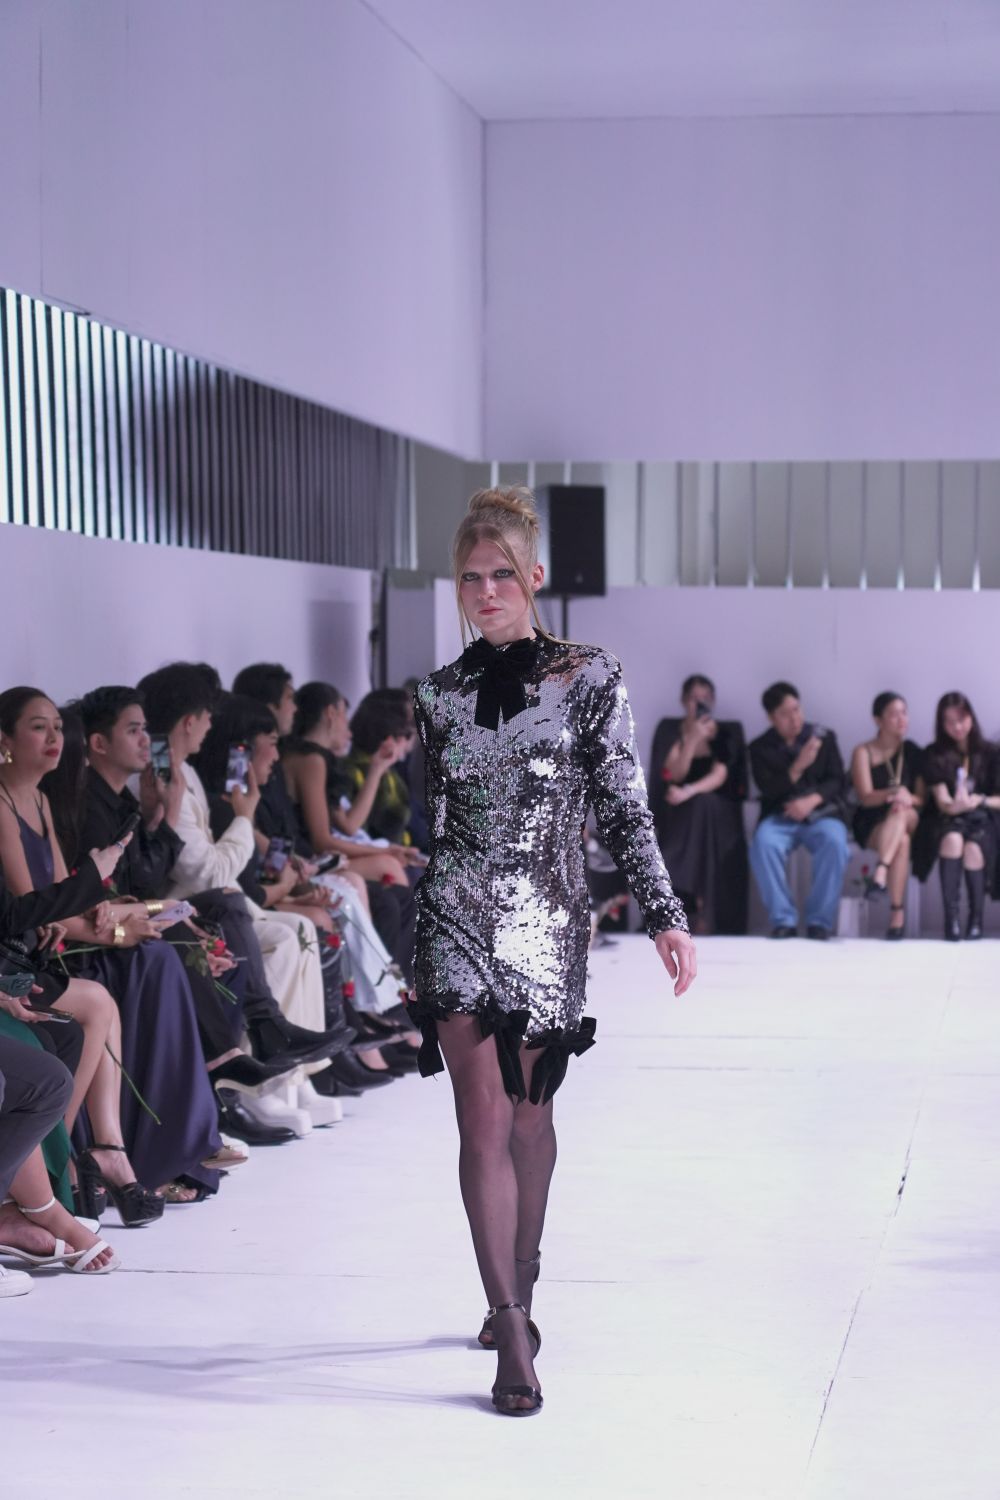 BYS Fashion Week Makes Filipino Fashion Exciting Again